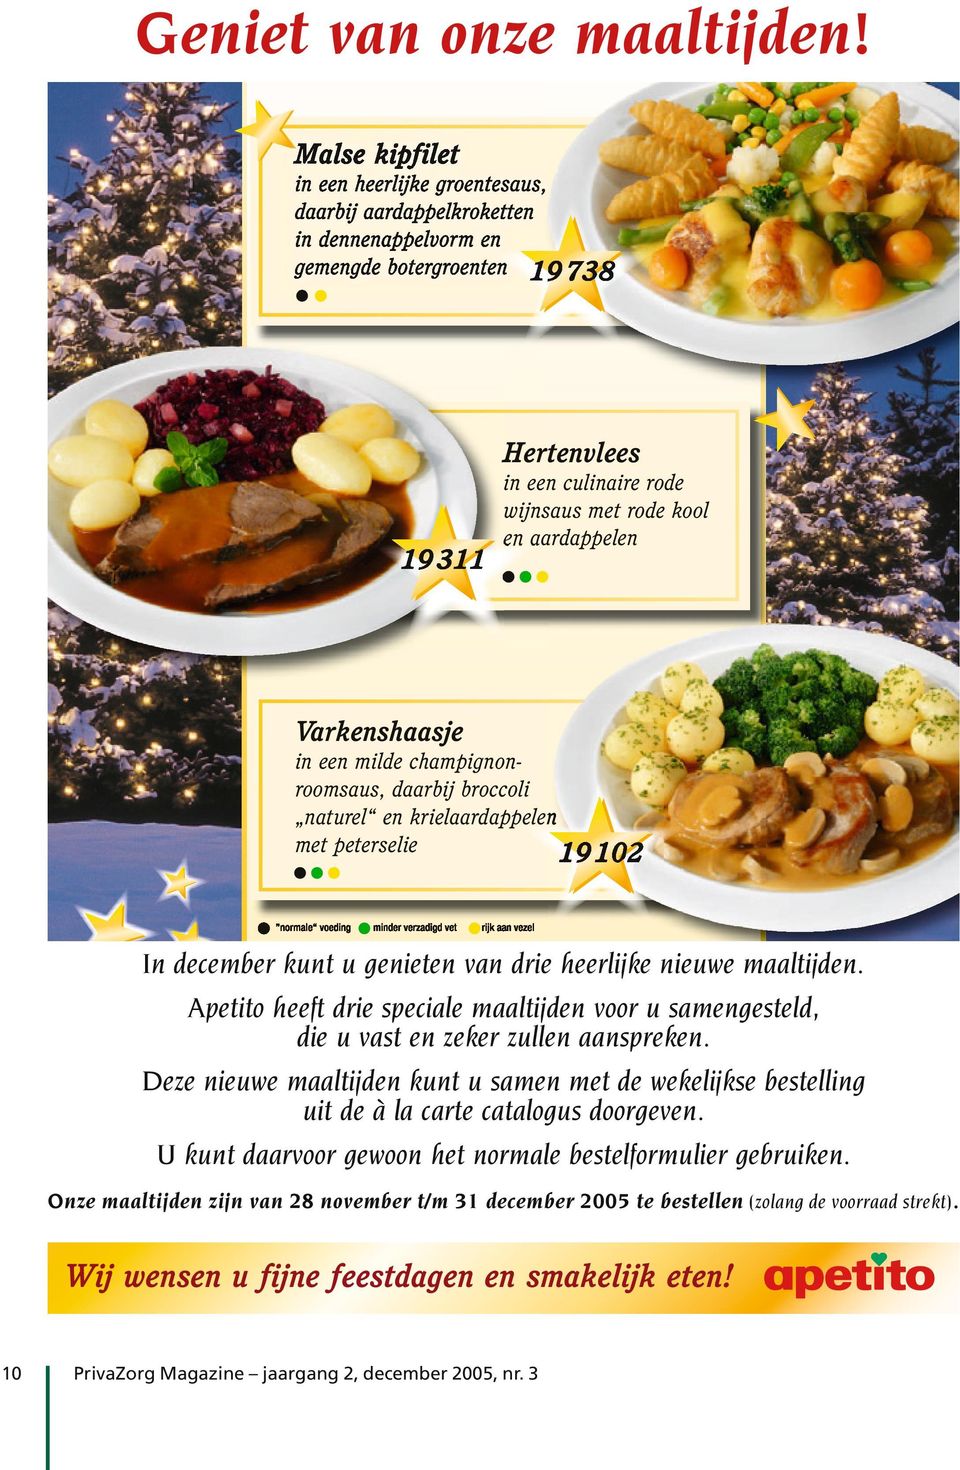 Deze nieuwe maaltijden kunt u samen met de wekelijkse bestelling uit de à la carte catalogus doorgeven.